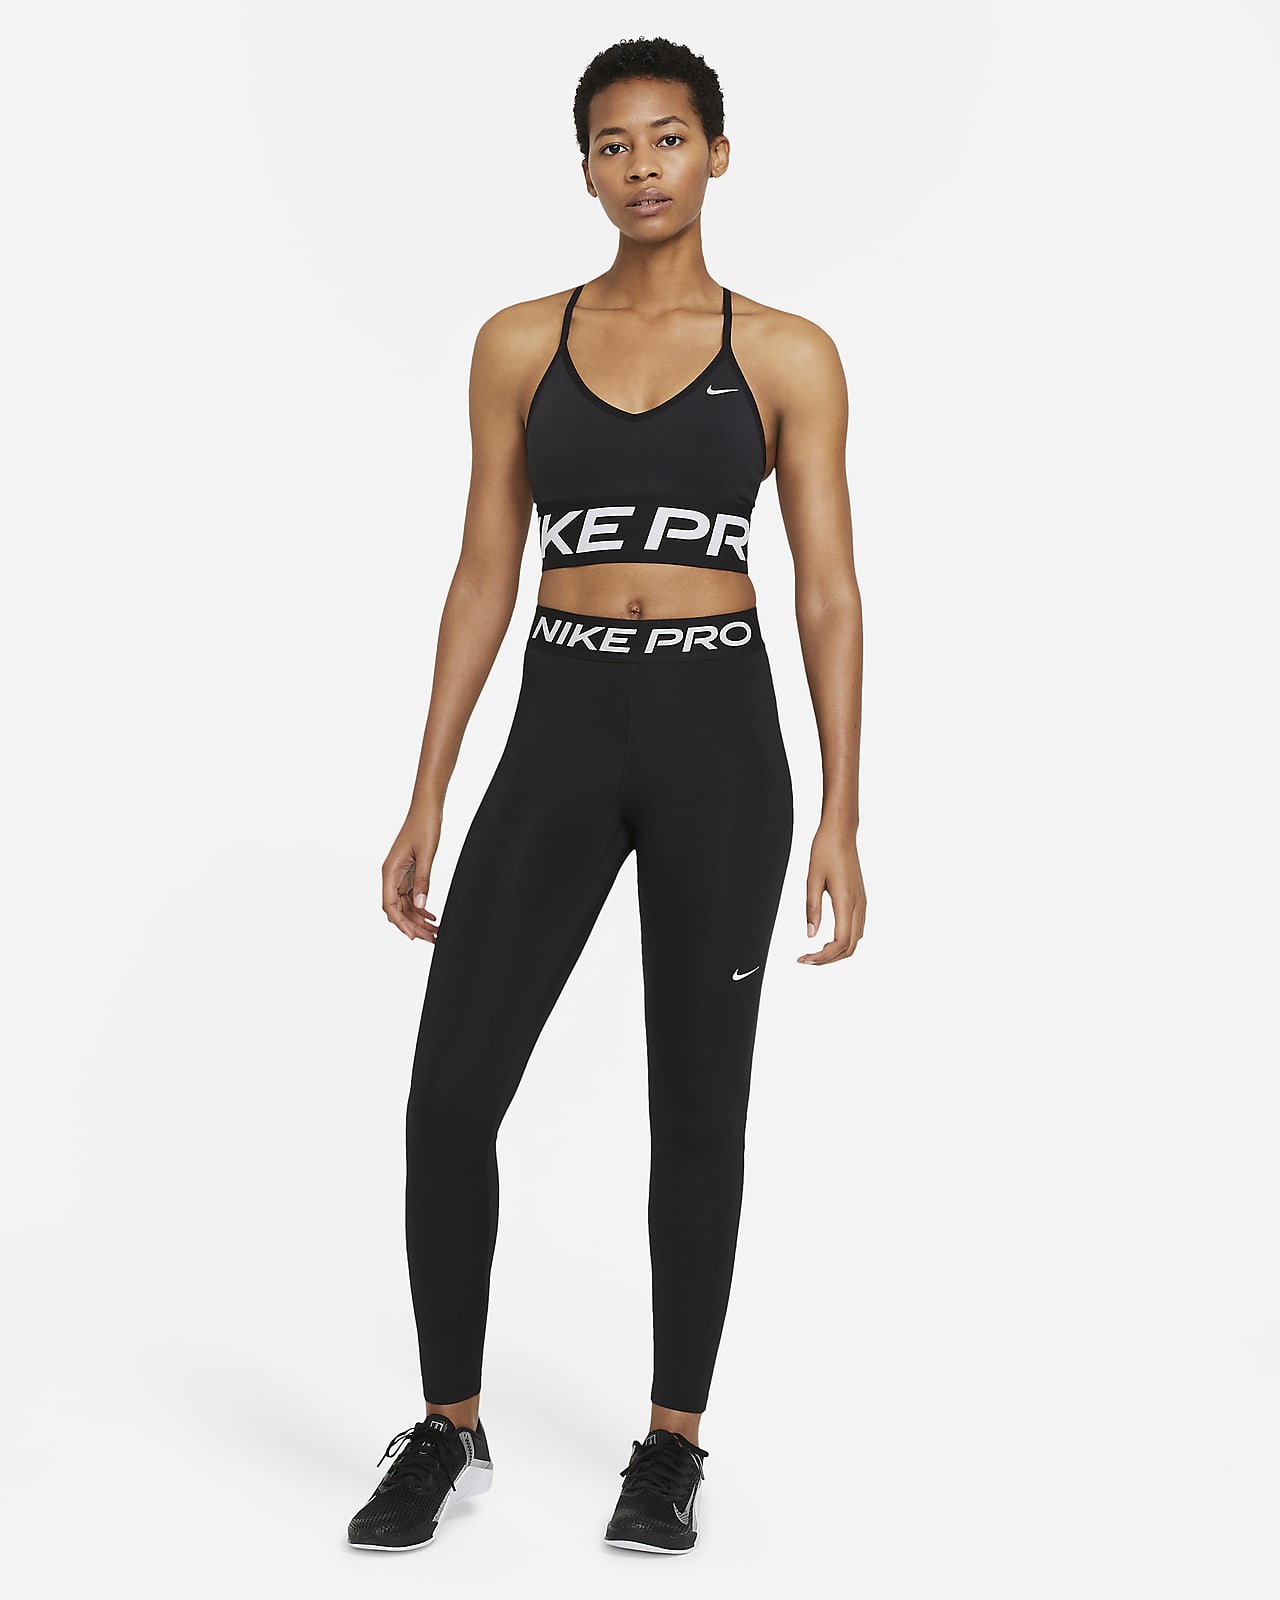 Miles Hol Afsnijden Nike Pro Legging met halfhoge taille en mesh vlakken voor dames. Nike BE